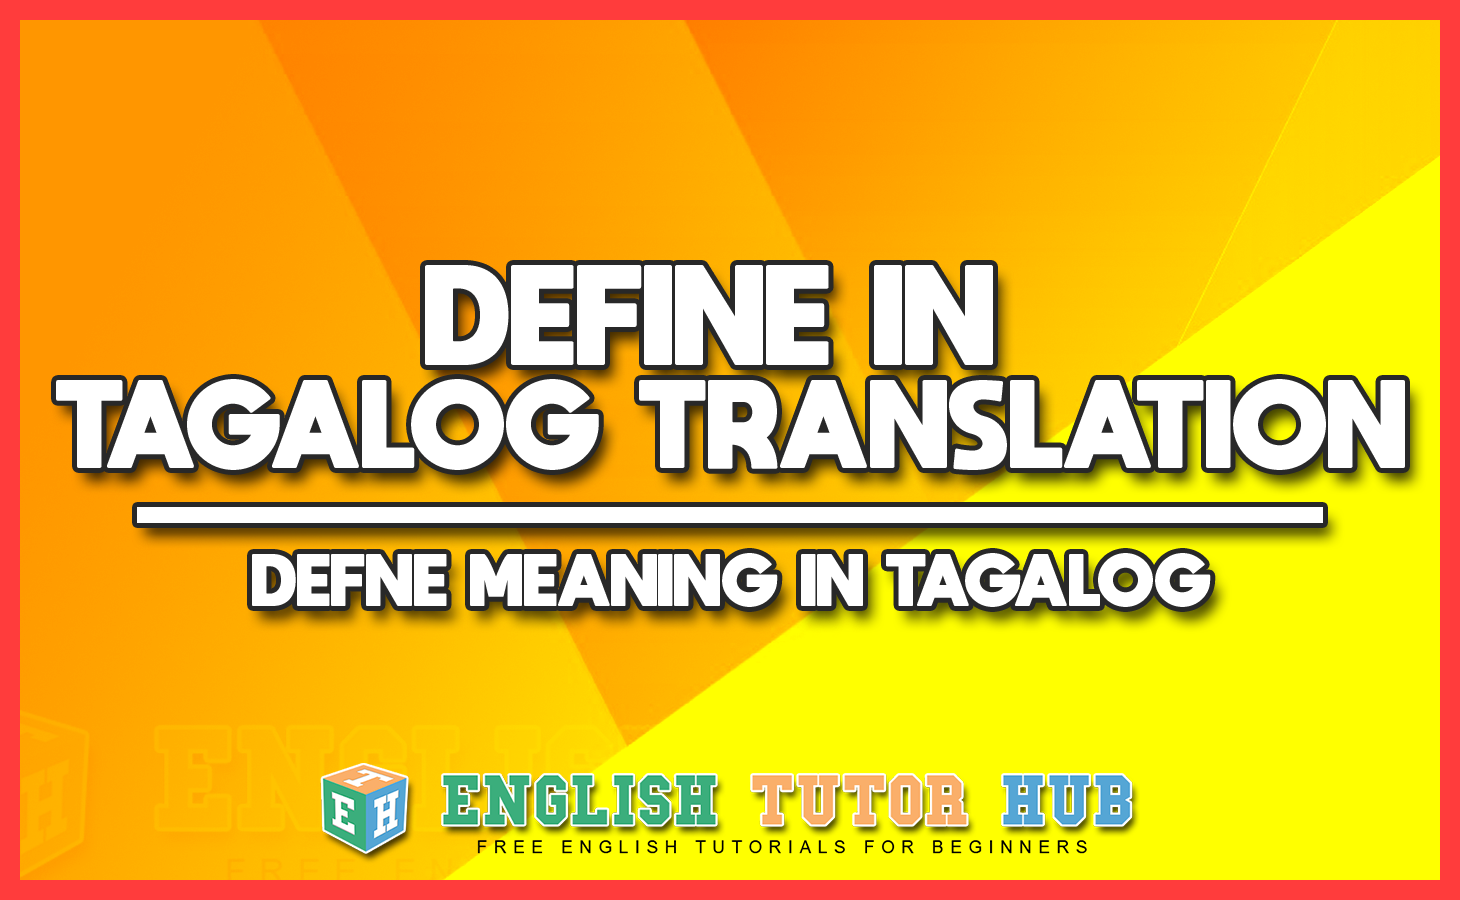 DEFINE IN TAGALOG TRANSLATION